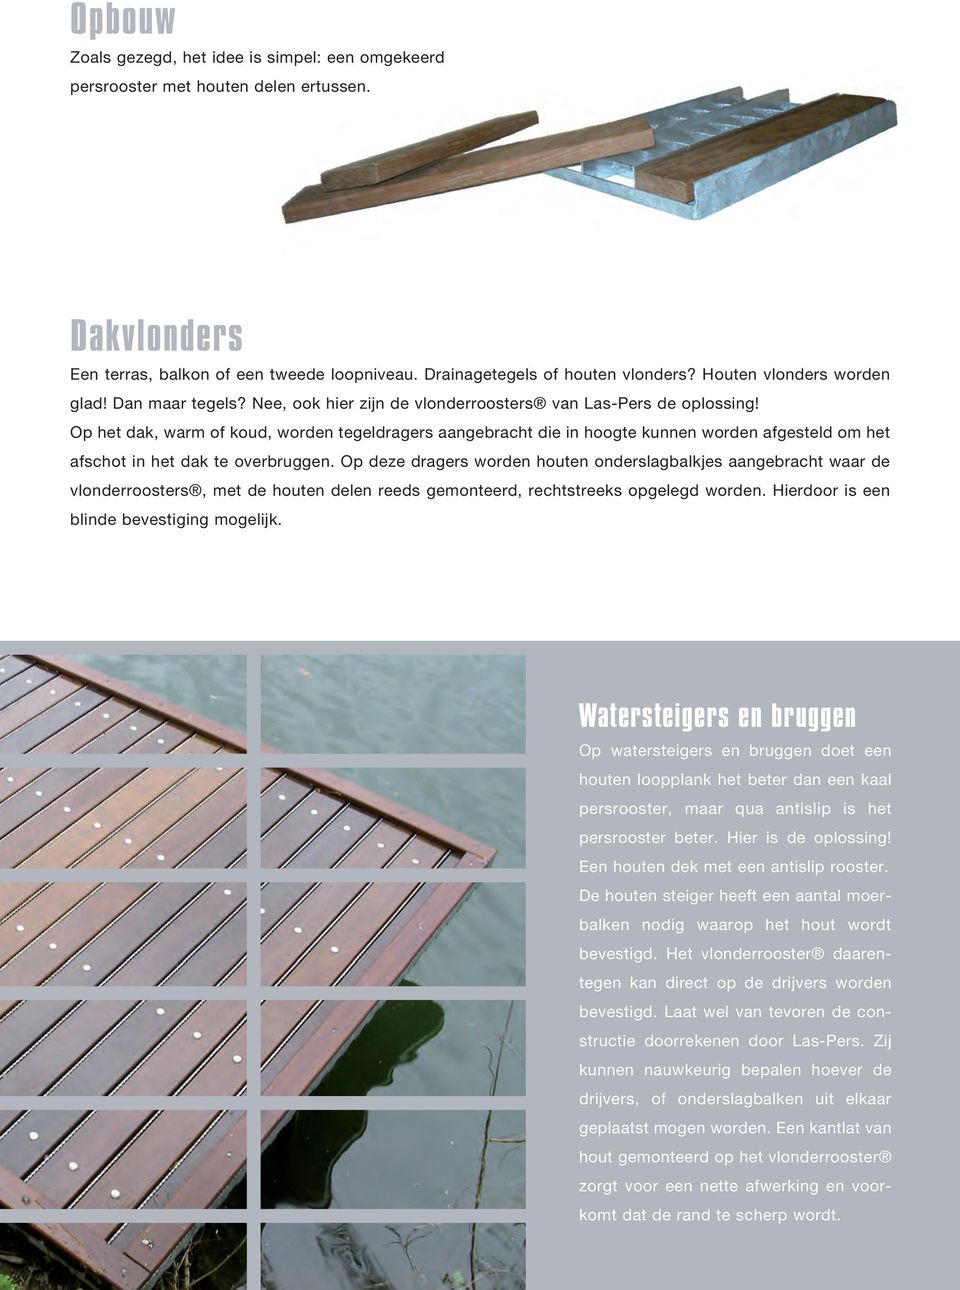 Op het dak, warm of koud, worden tegeldragers aangebracht die in hoogte kunnen worden afgesteld om het afschot in het dak te overbruggen.